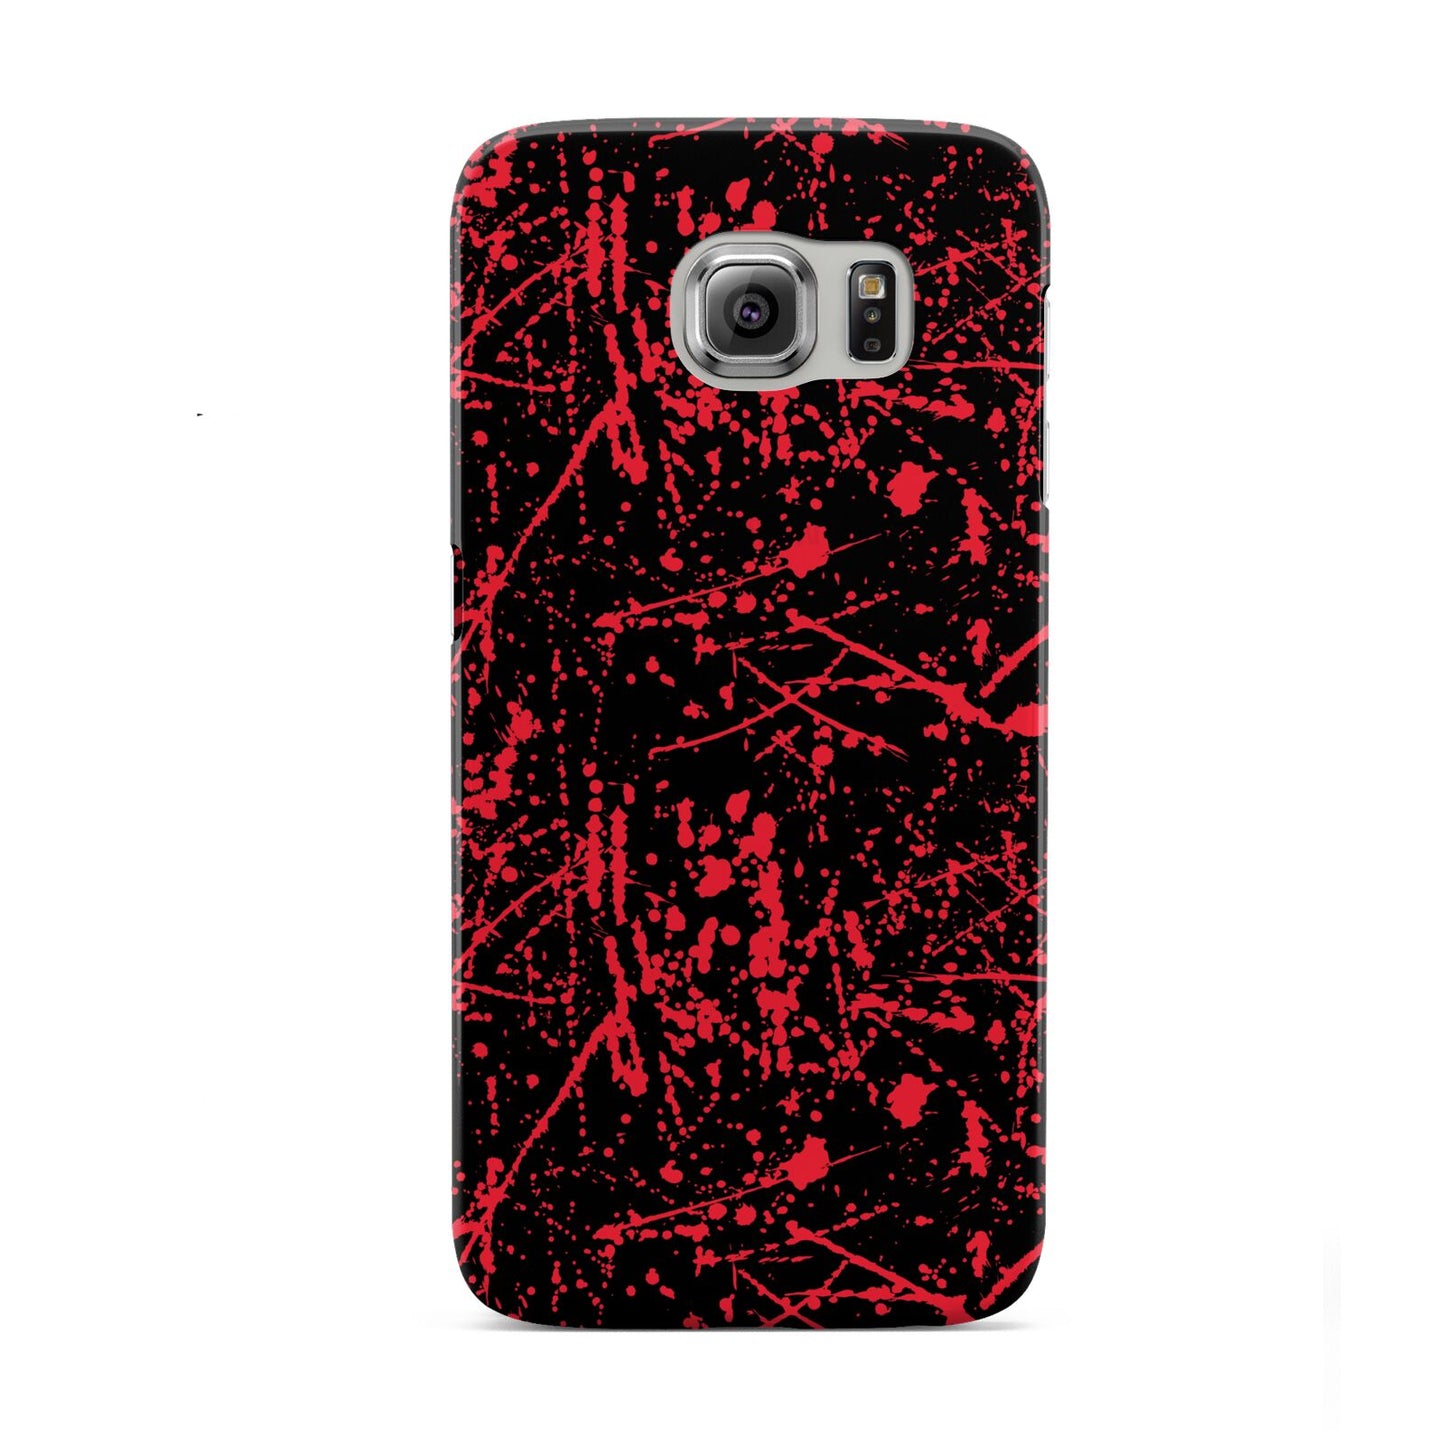 Blood Splatters Samsung Galaxy S6 Case